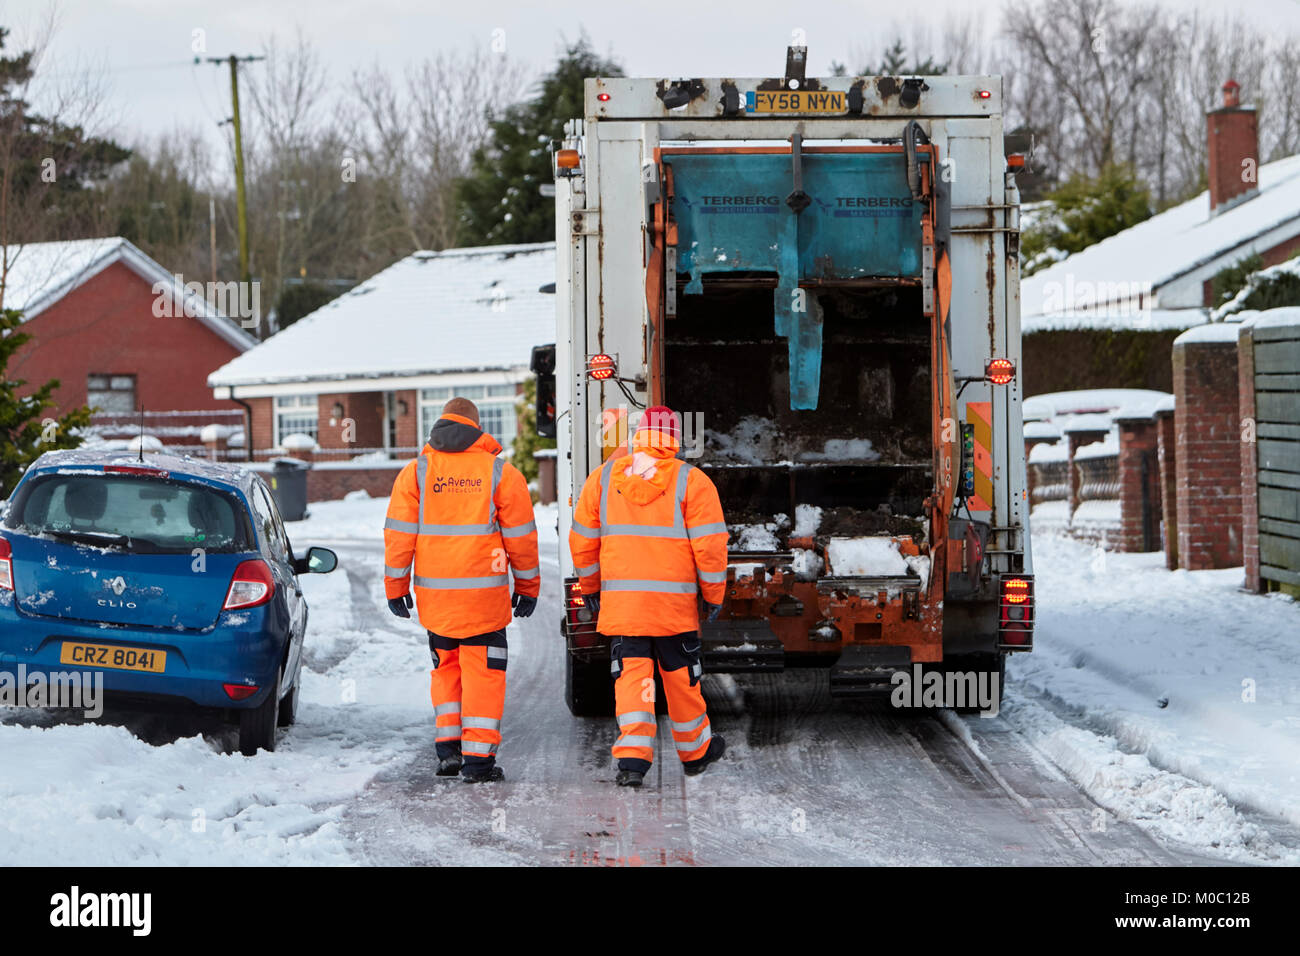 Les travailleurs qui refusent la conduite de camions de collecte de recyclage dans cette rue couverte de neige dans la région de Belfast en Irlande du Nord Banque D'Images